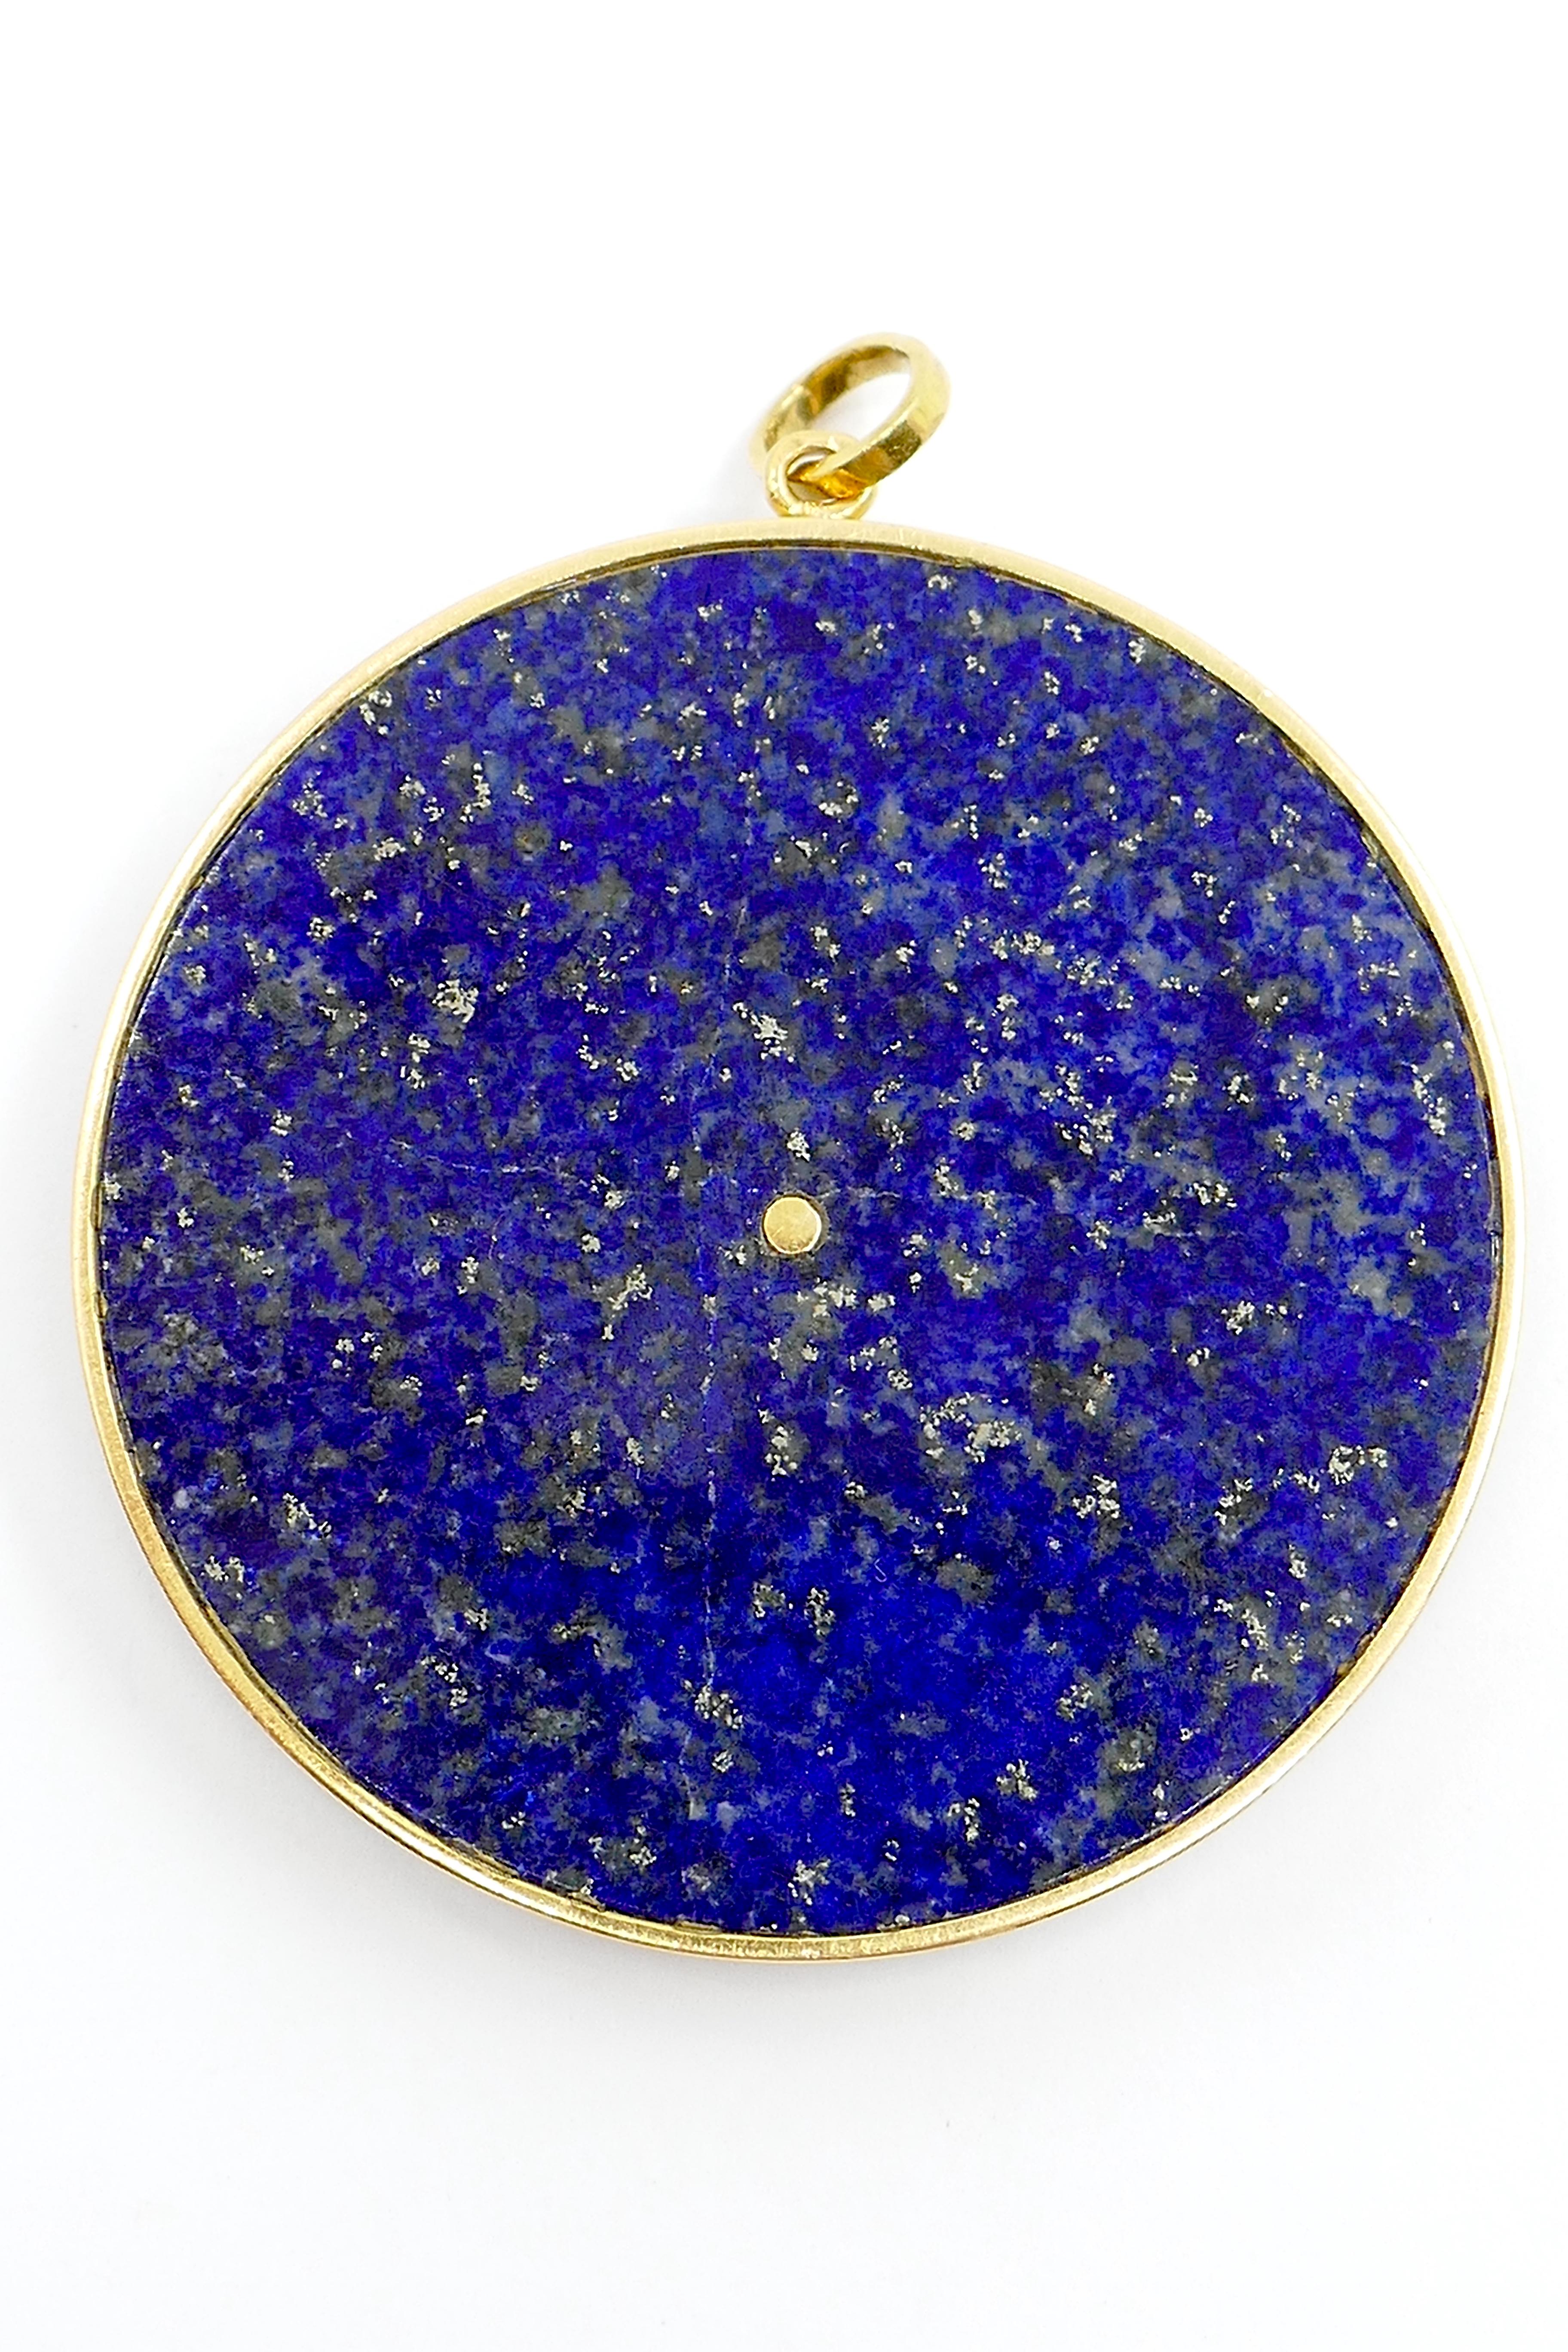 14k gold sagittarius pendant